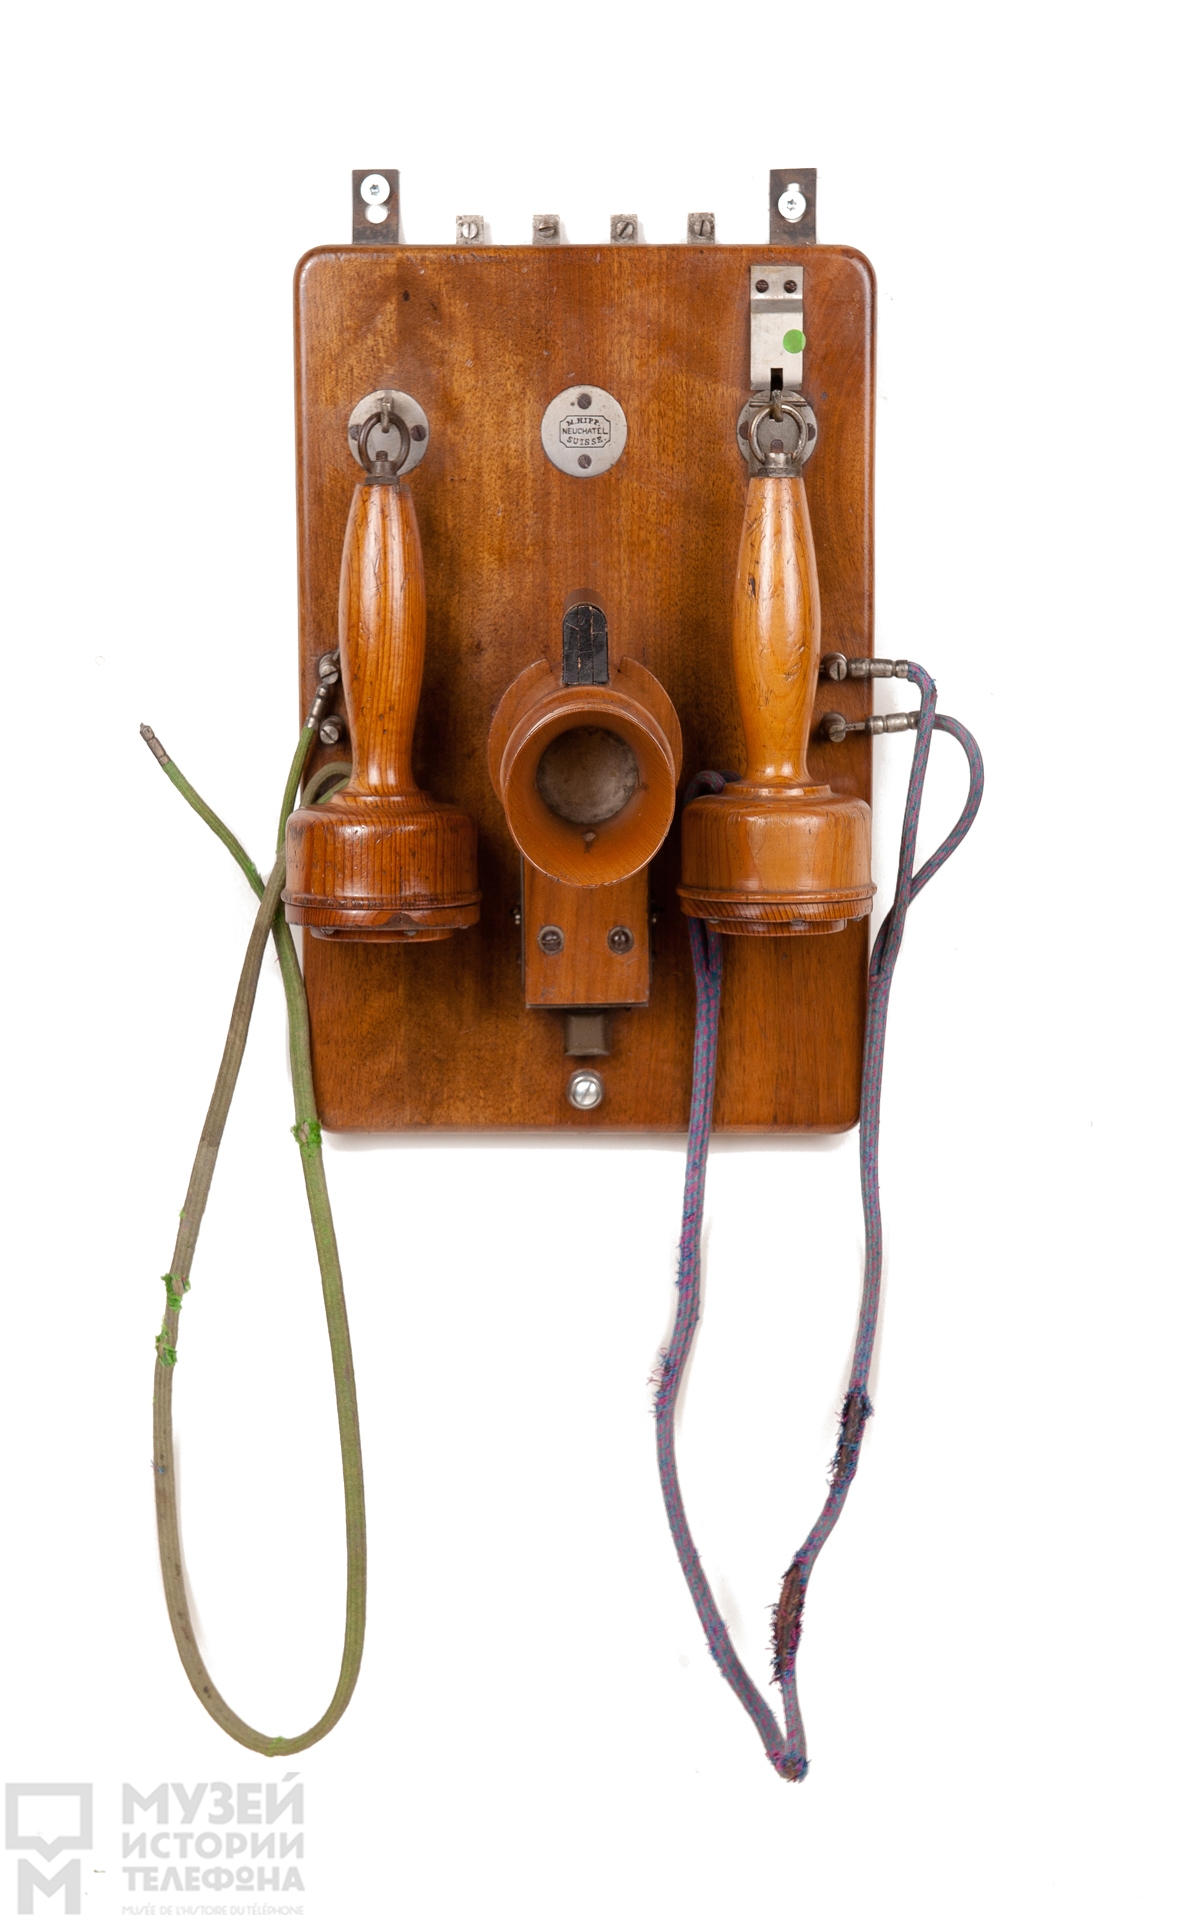 Телефонный аппарат батарейного вызова системы МБ с угольным порошковым микрофоном и двумя наушниками конструкции М.Хиппа, дерево